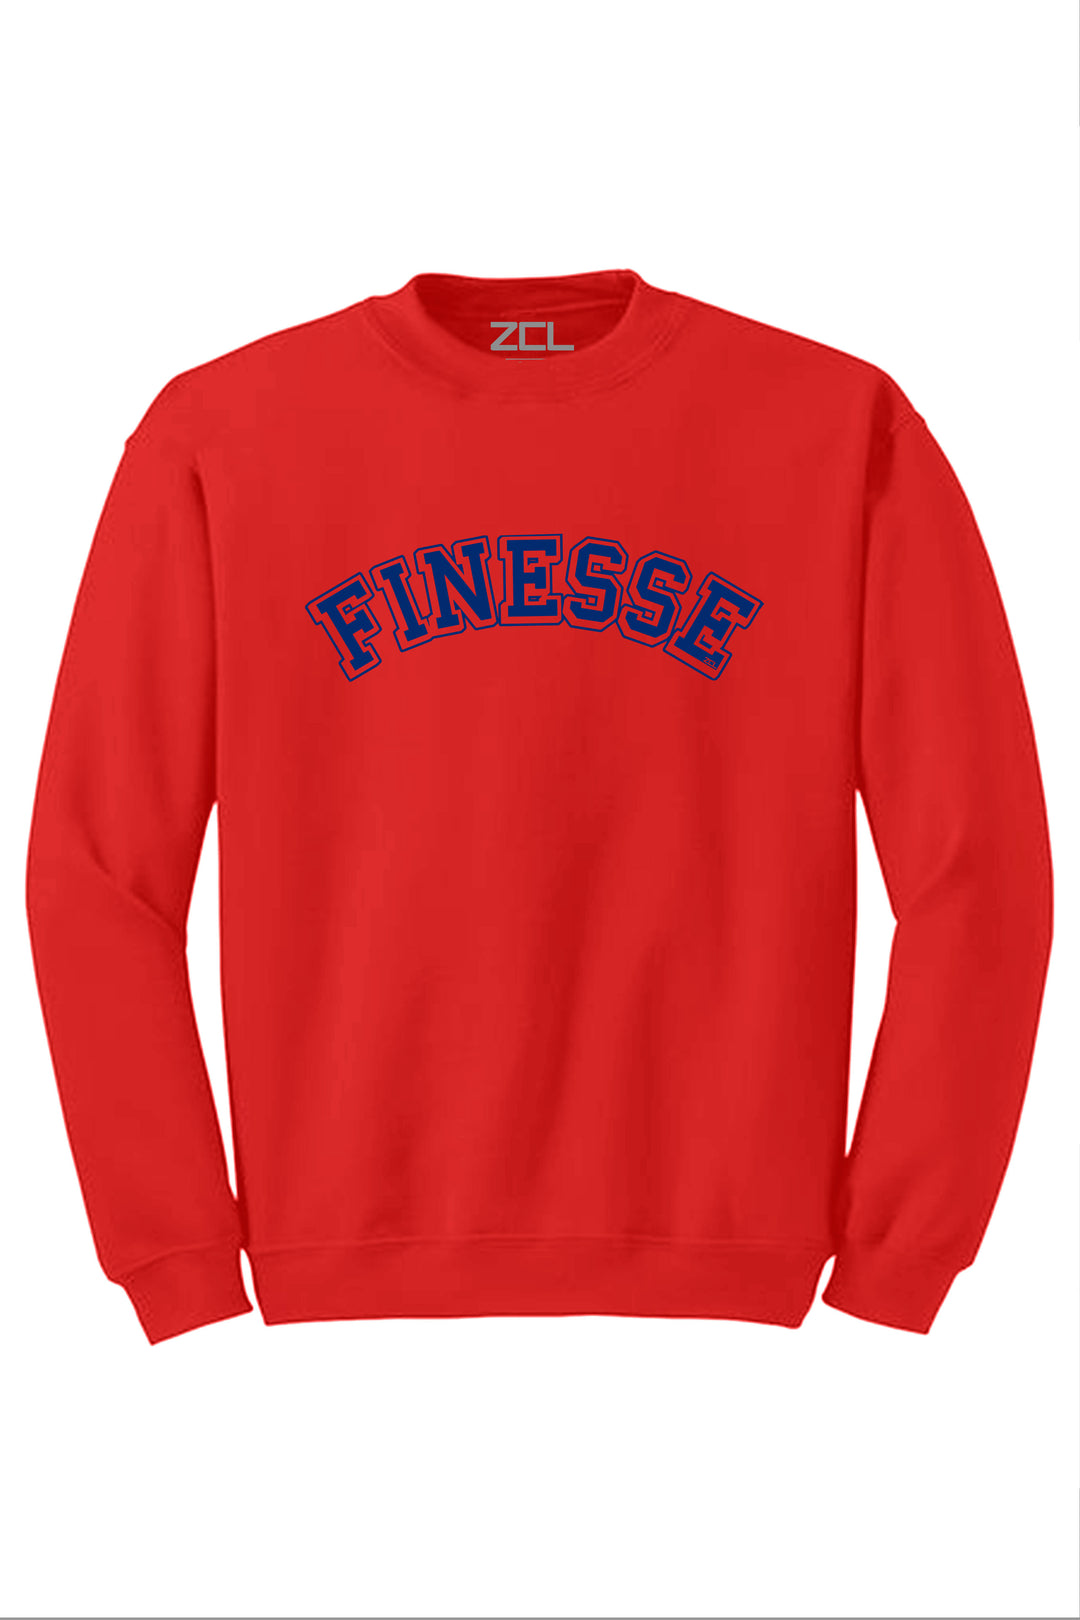 Finesse Crewneck Sweatshirt (Royal Blue Logo) - Zamage